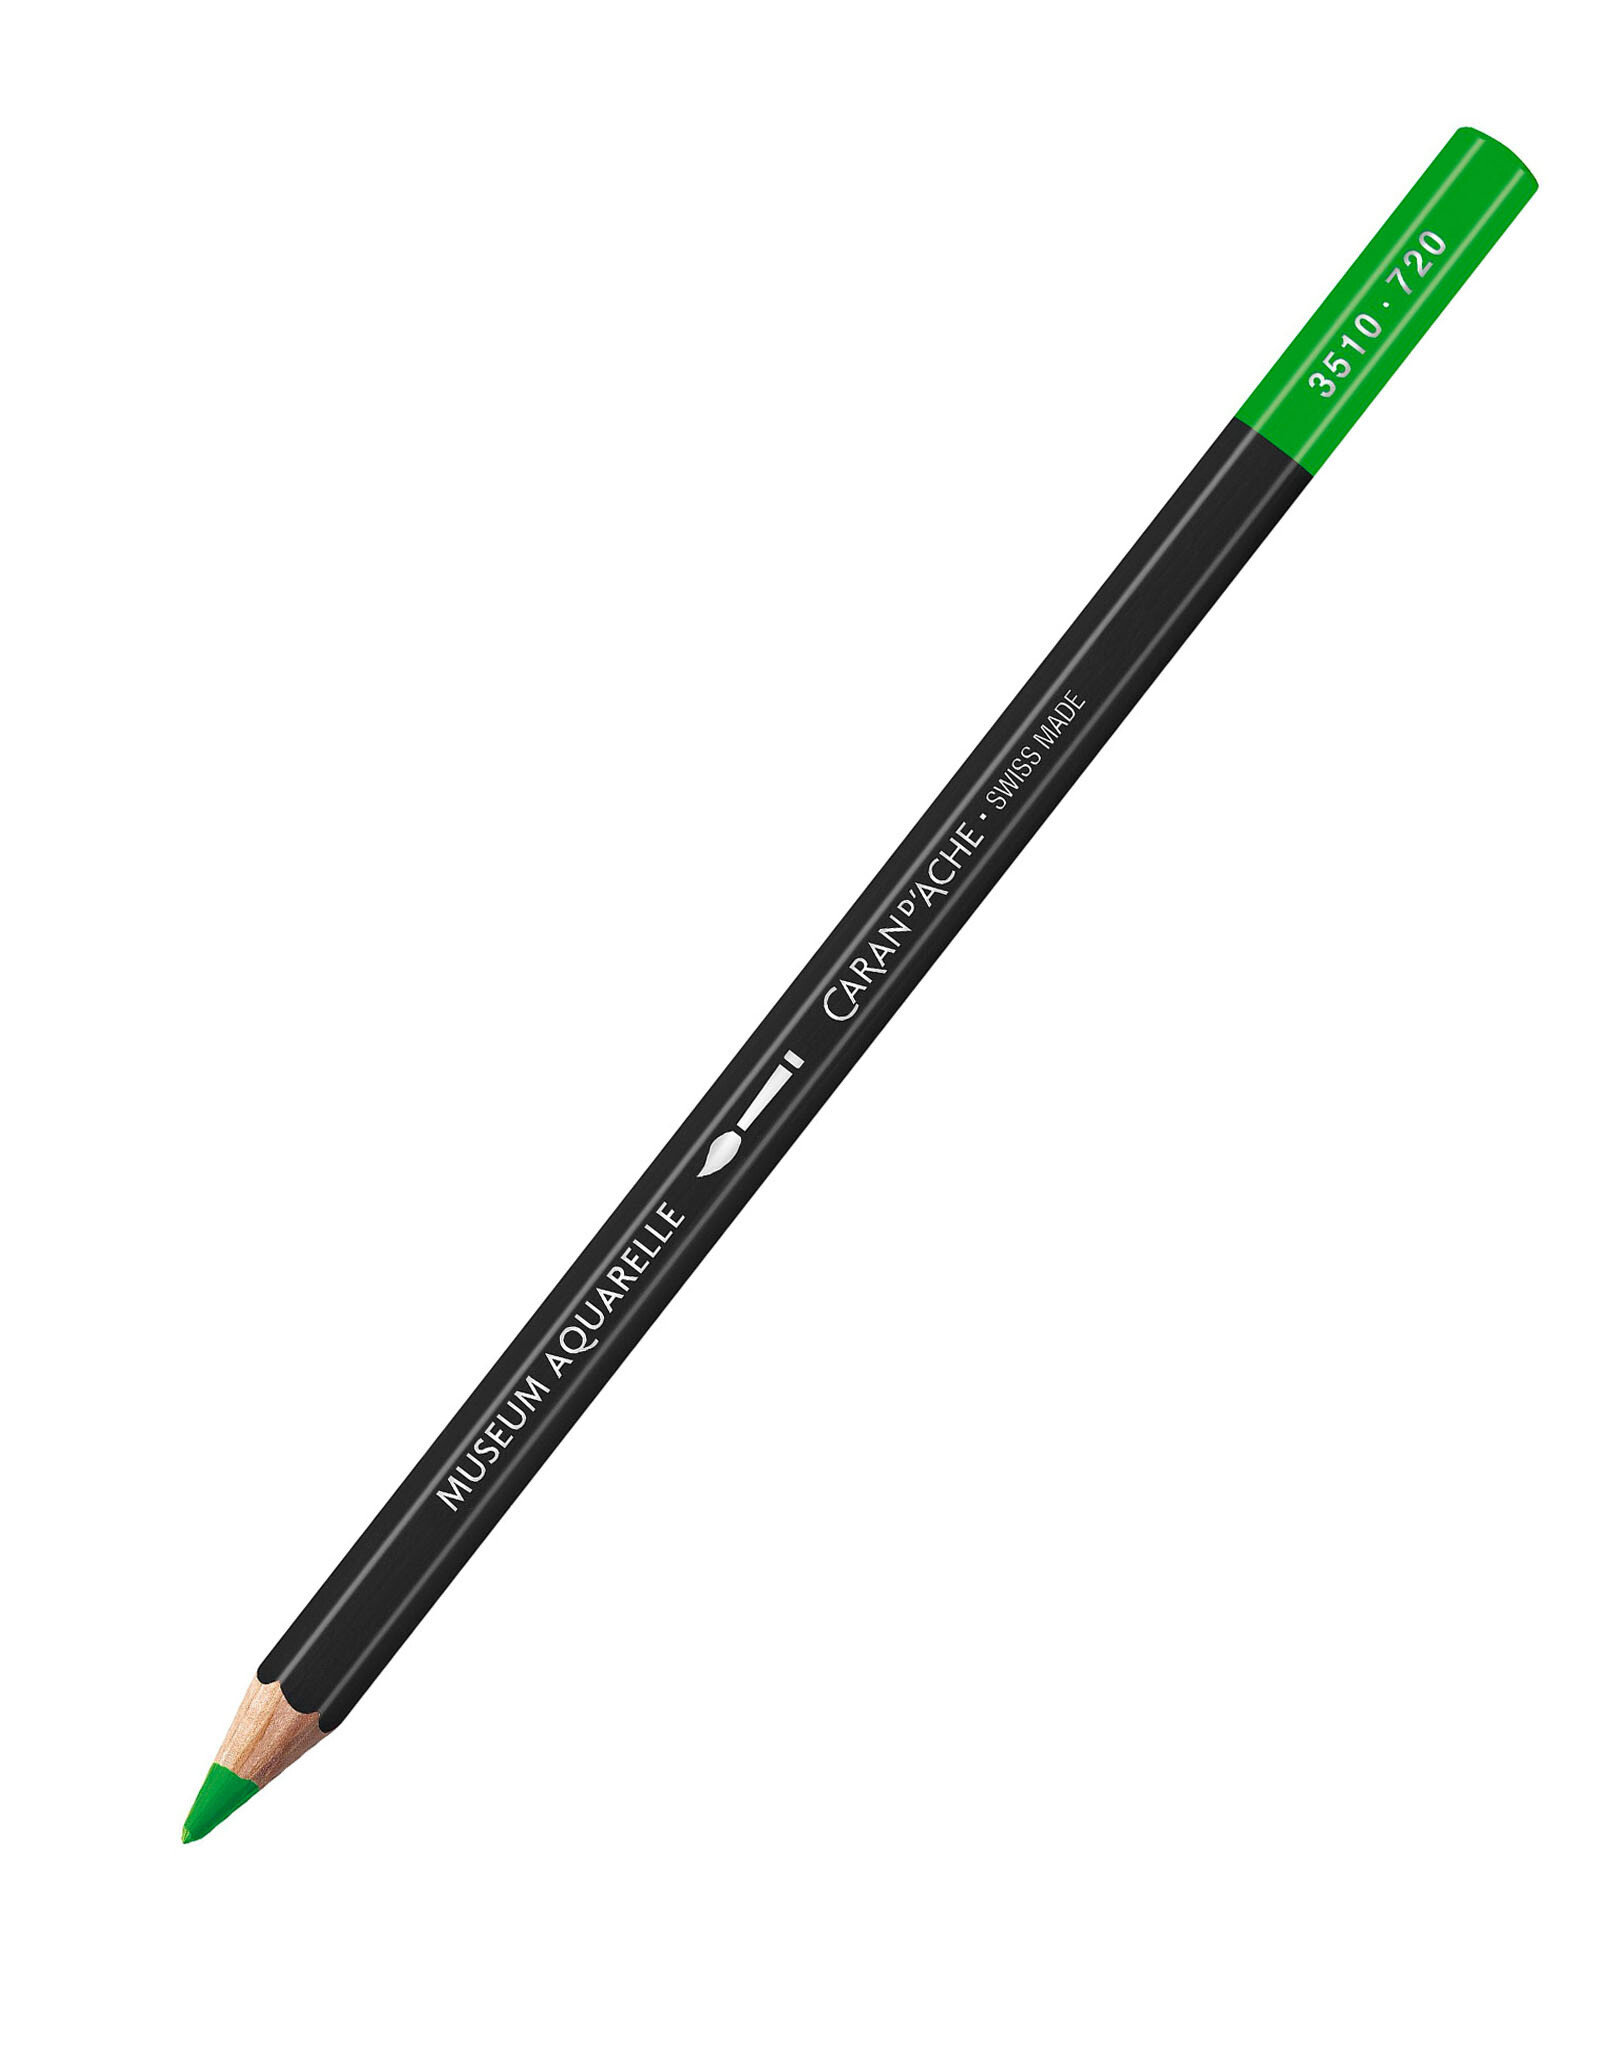 Caran d'Ache Caran D'Ache Museum Aquarelle Colored Pencils, Bright Green